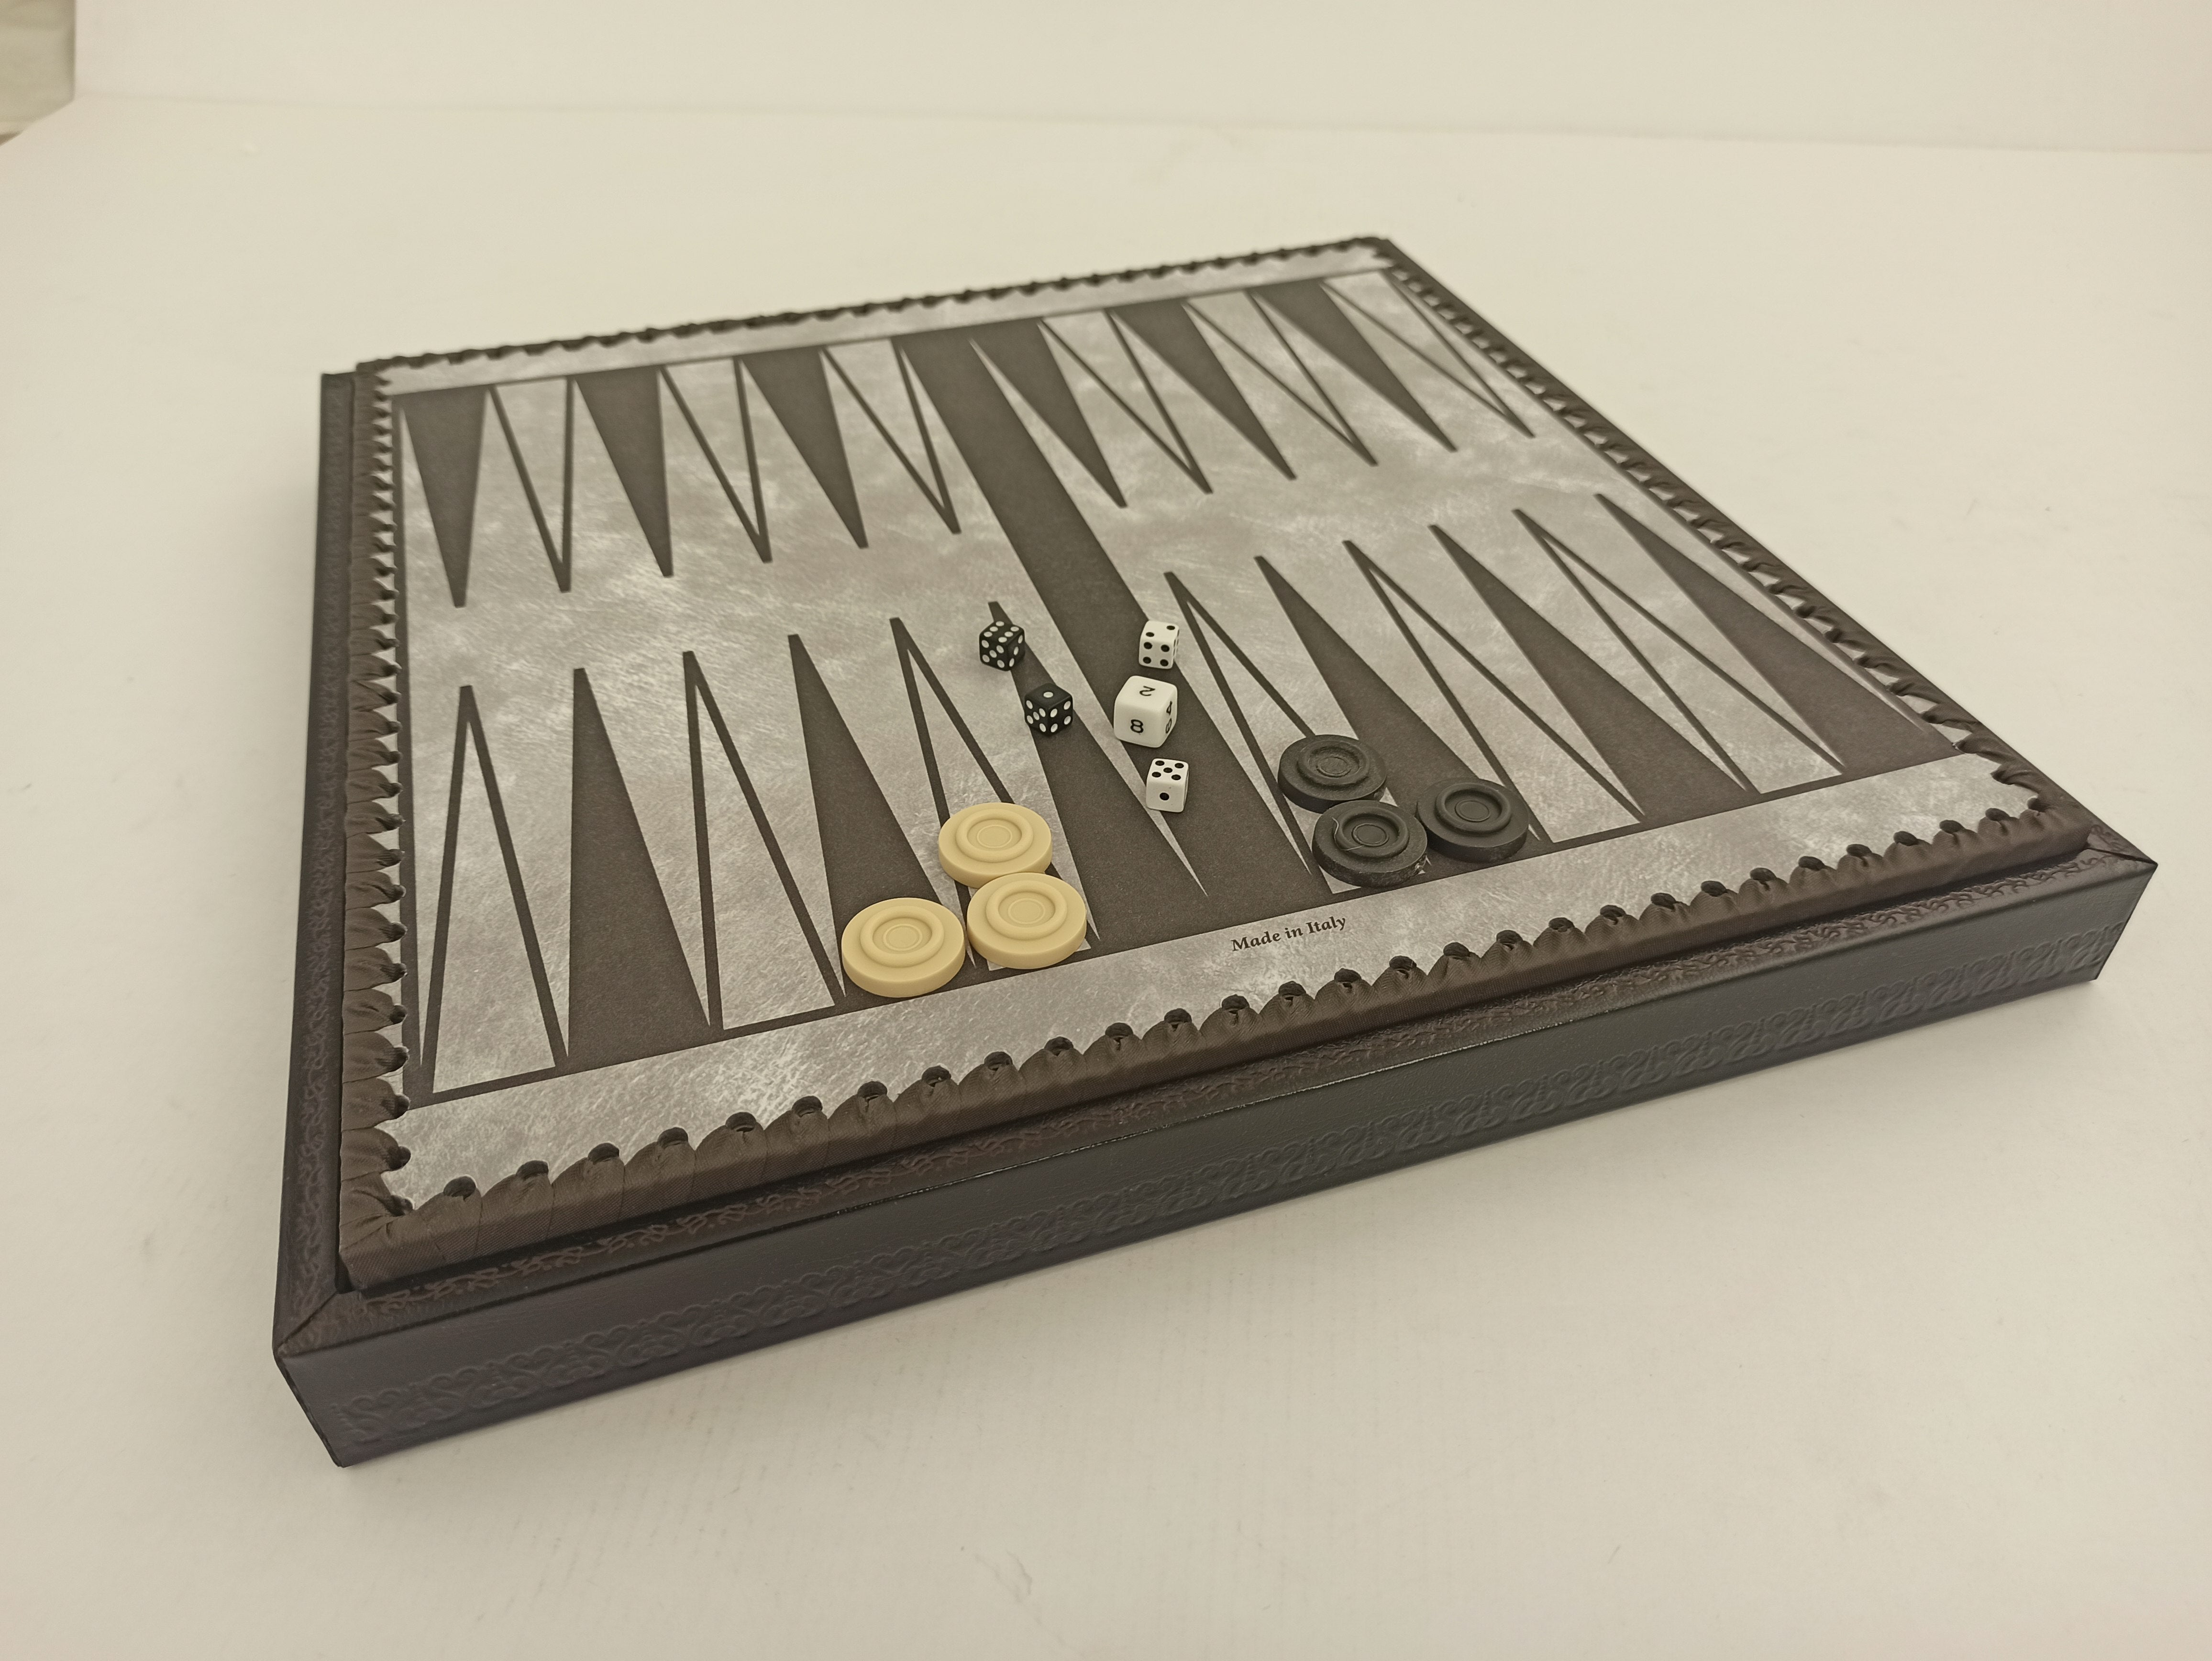 Der italienische Nero 13,75 Zoll Schachschrank mit abnehmbarem Deckel, Backgammon-Brett, Würfel und Damespiel